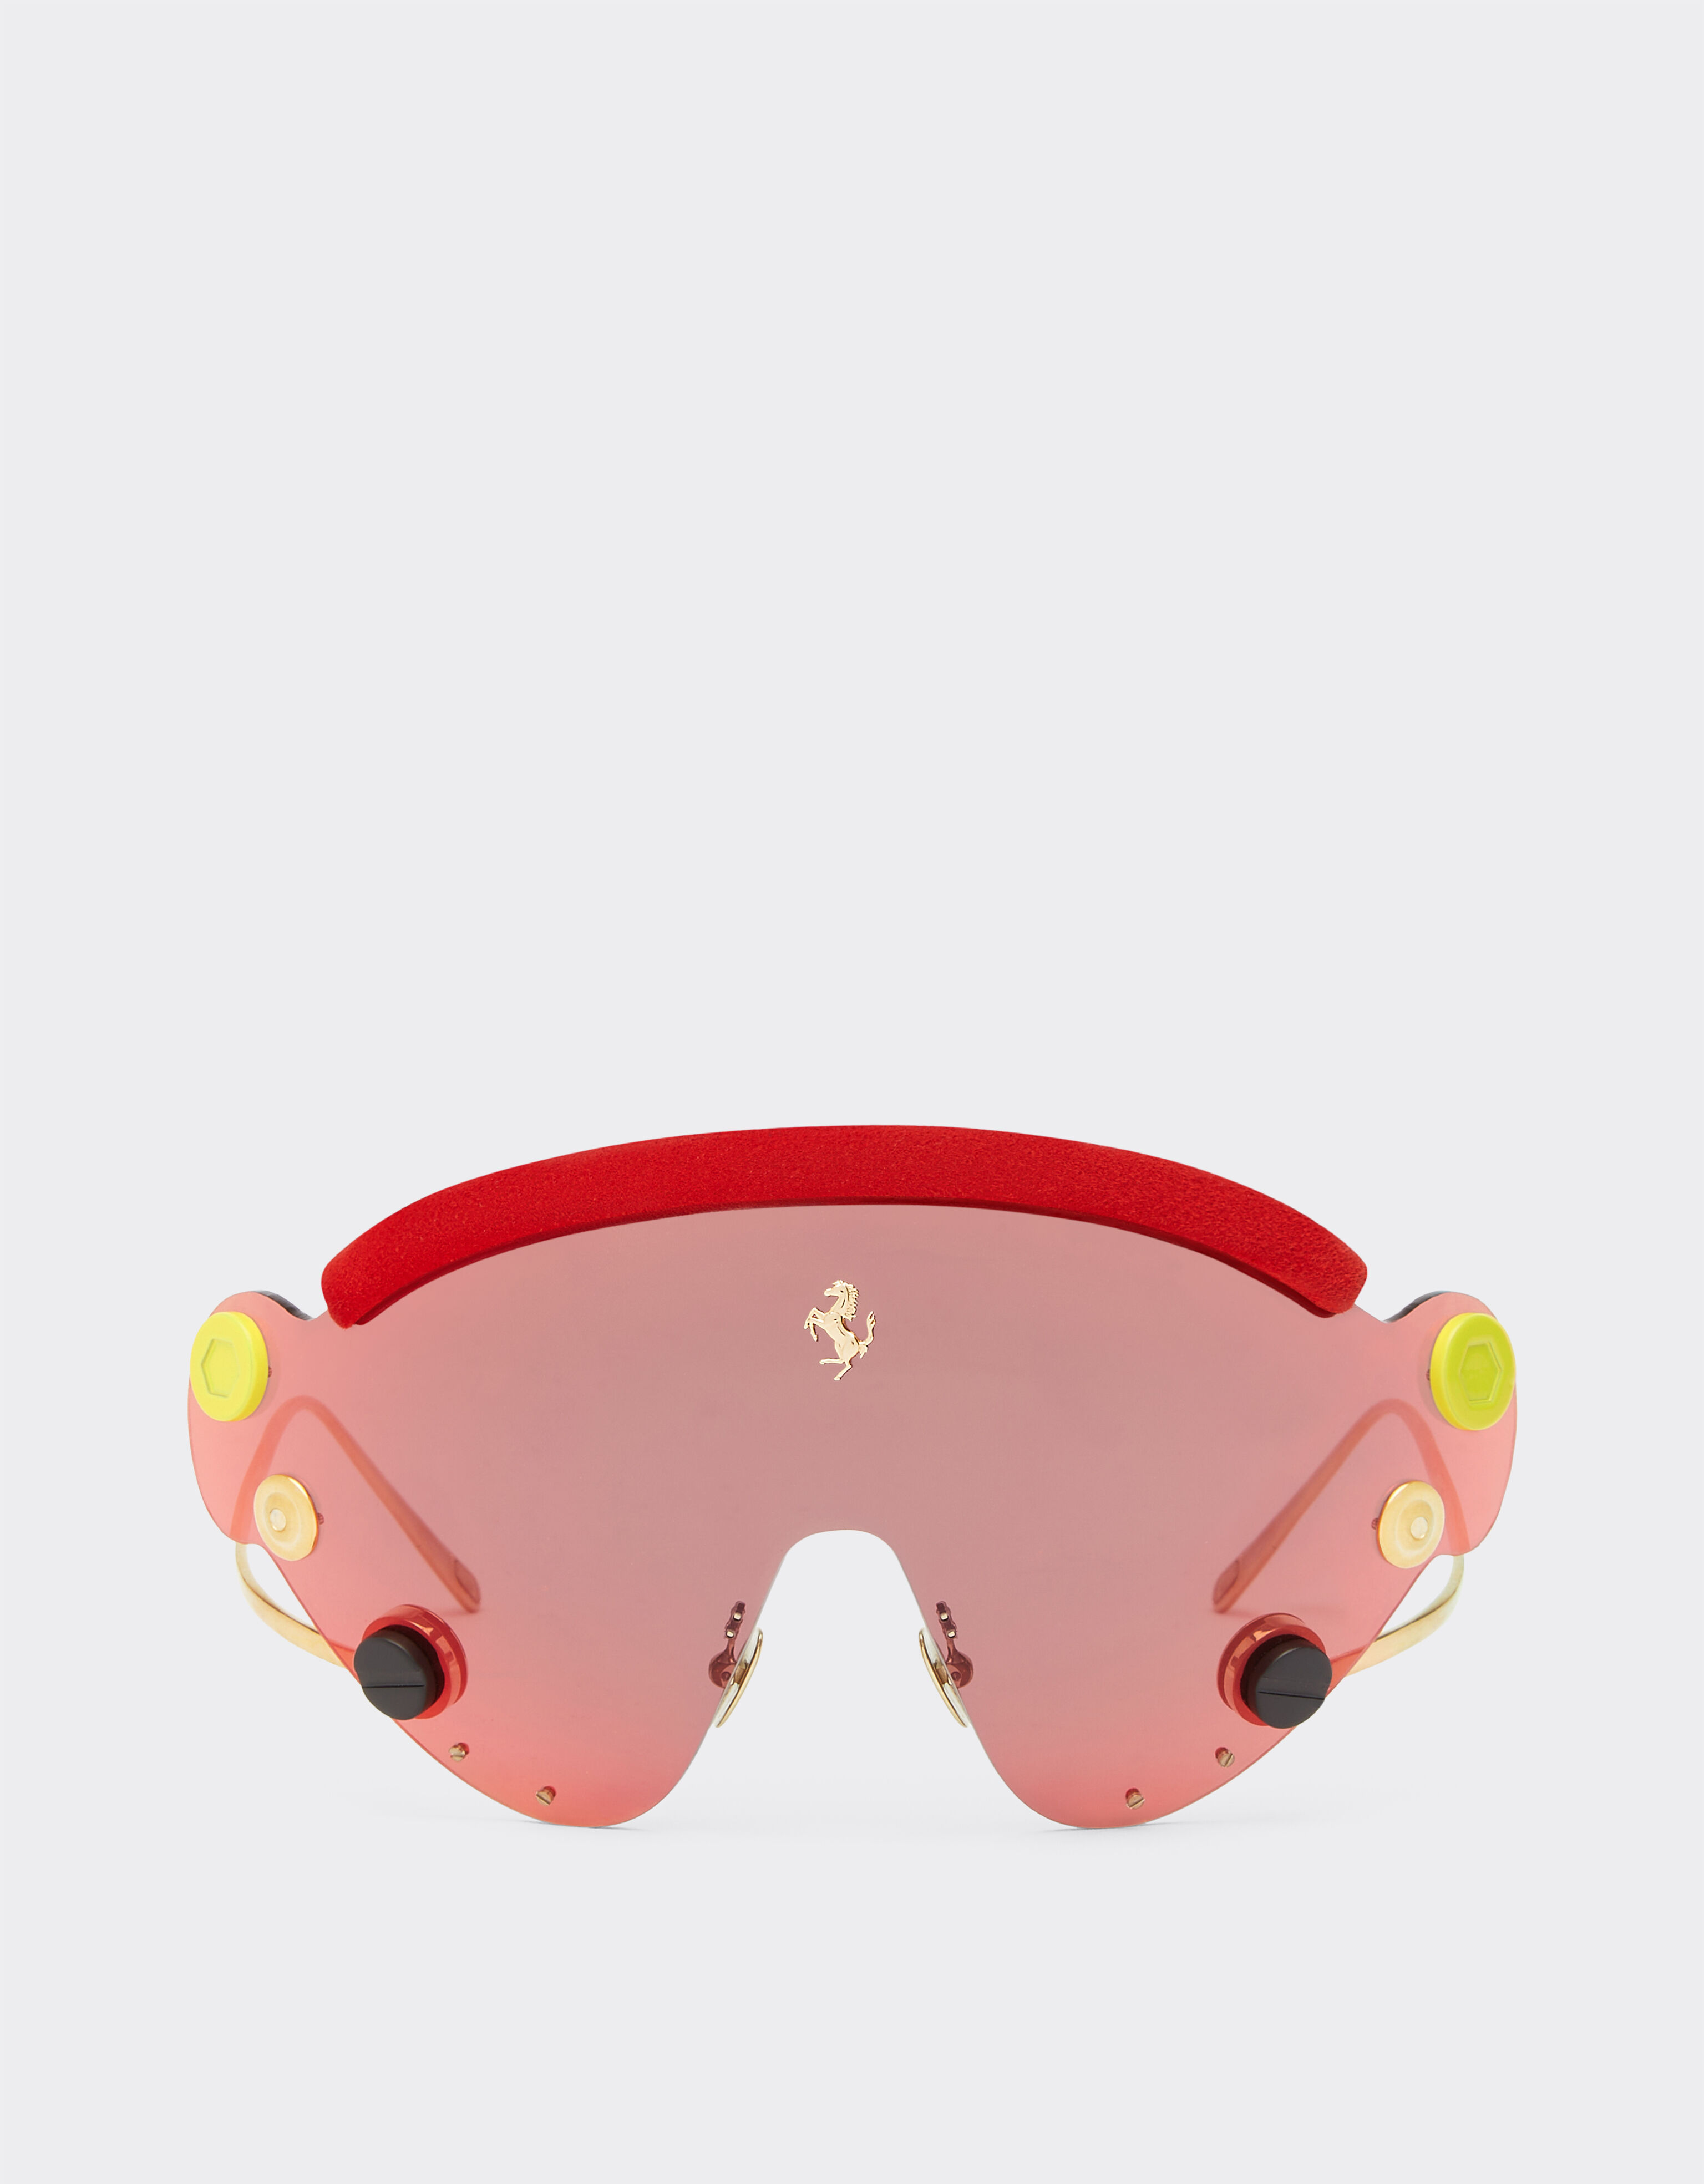 Ferrari Gafas de sol de Ferrari de edición limitada en metal rojo y dorado con pantalla de espejo roja Plata F1247f